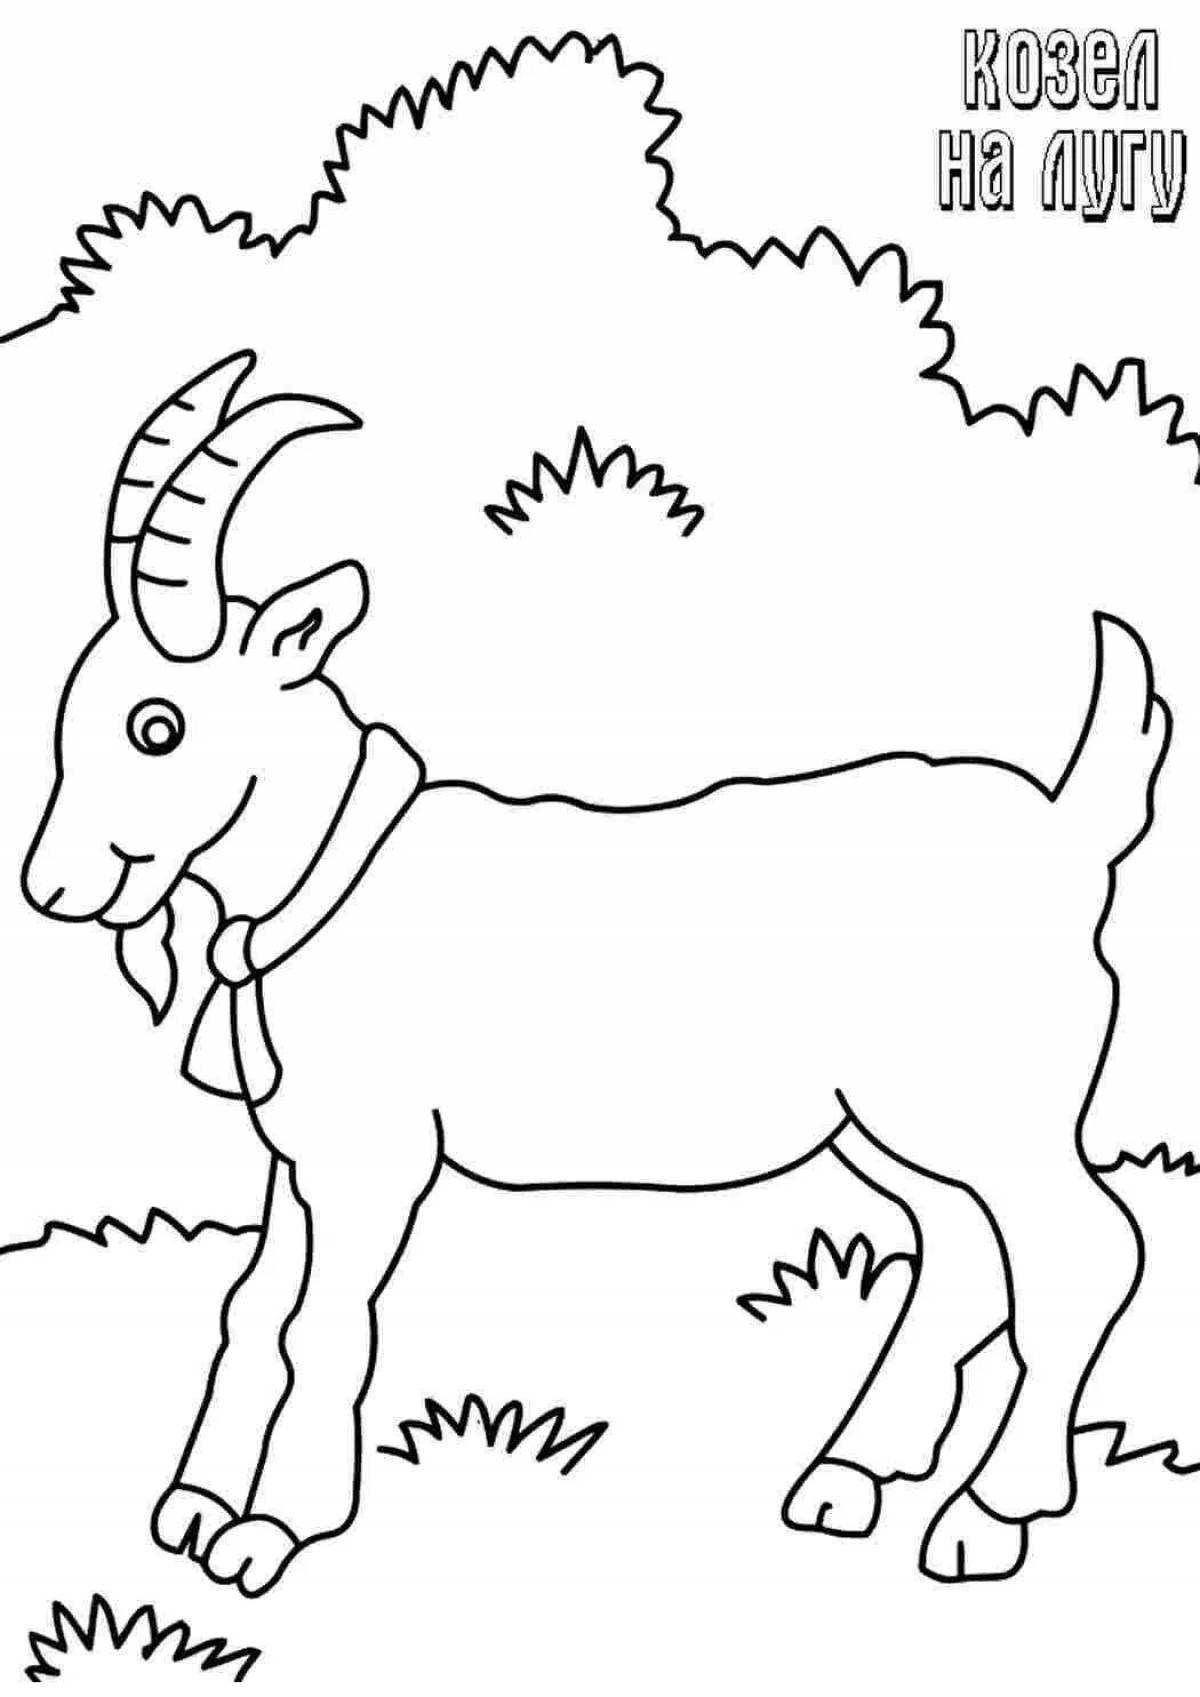 Увлекательная раскраска с козой для детей 5-6 лет